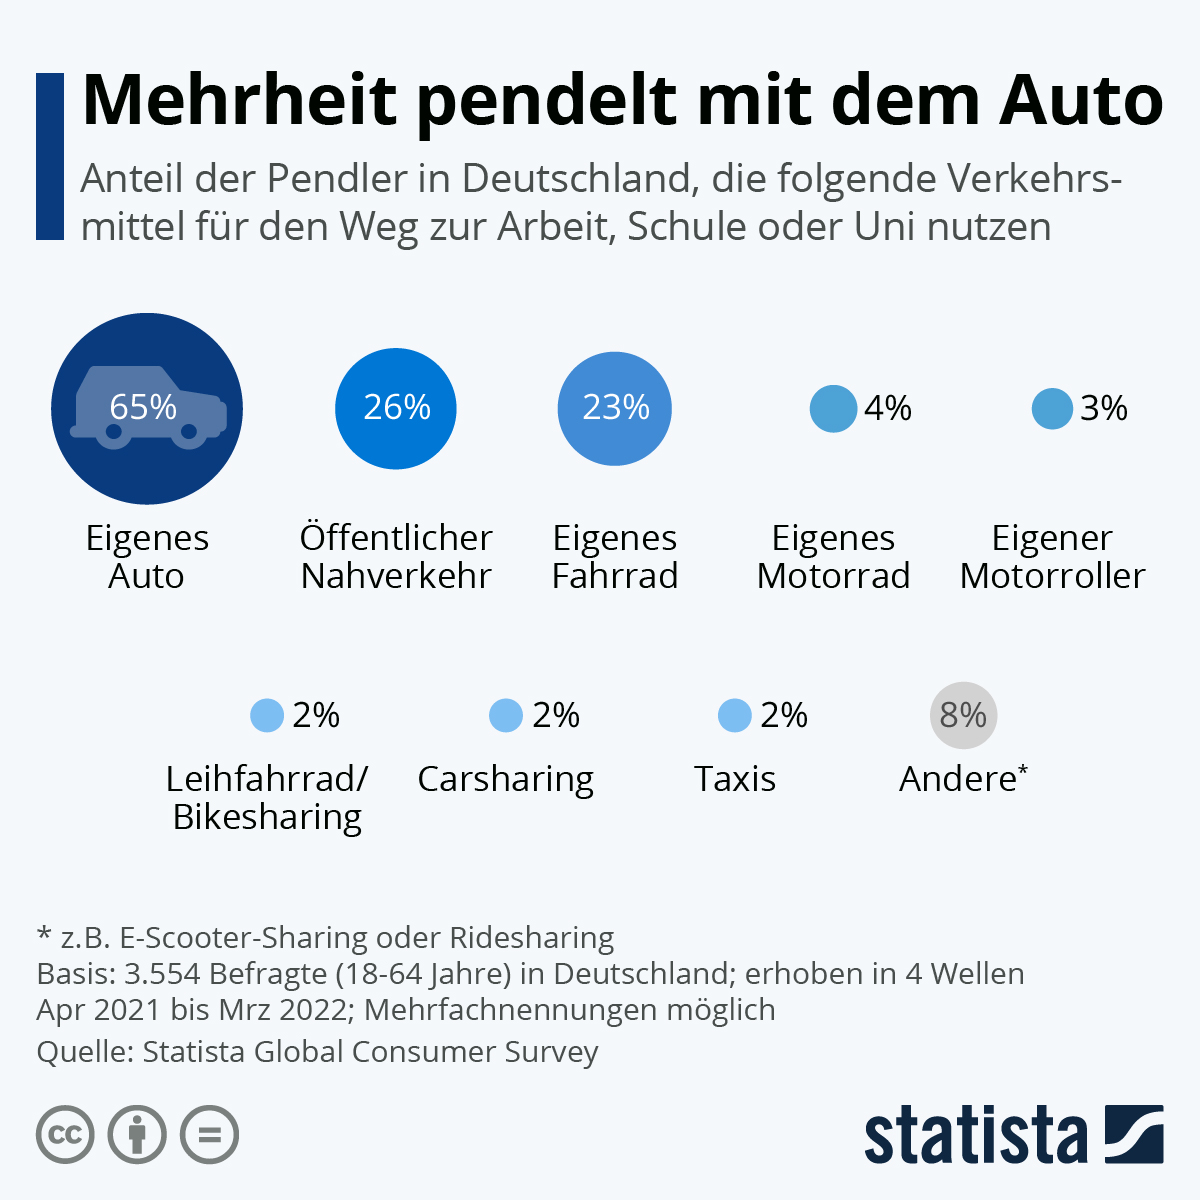 Die meisten Deutschen fahren mit dem Auto zur Arbeit. 